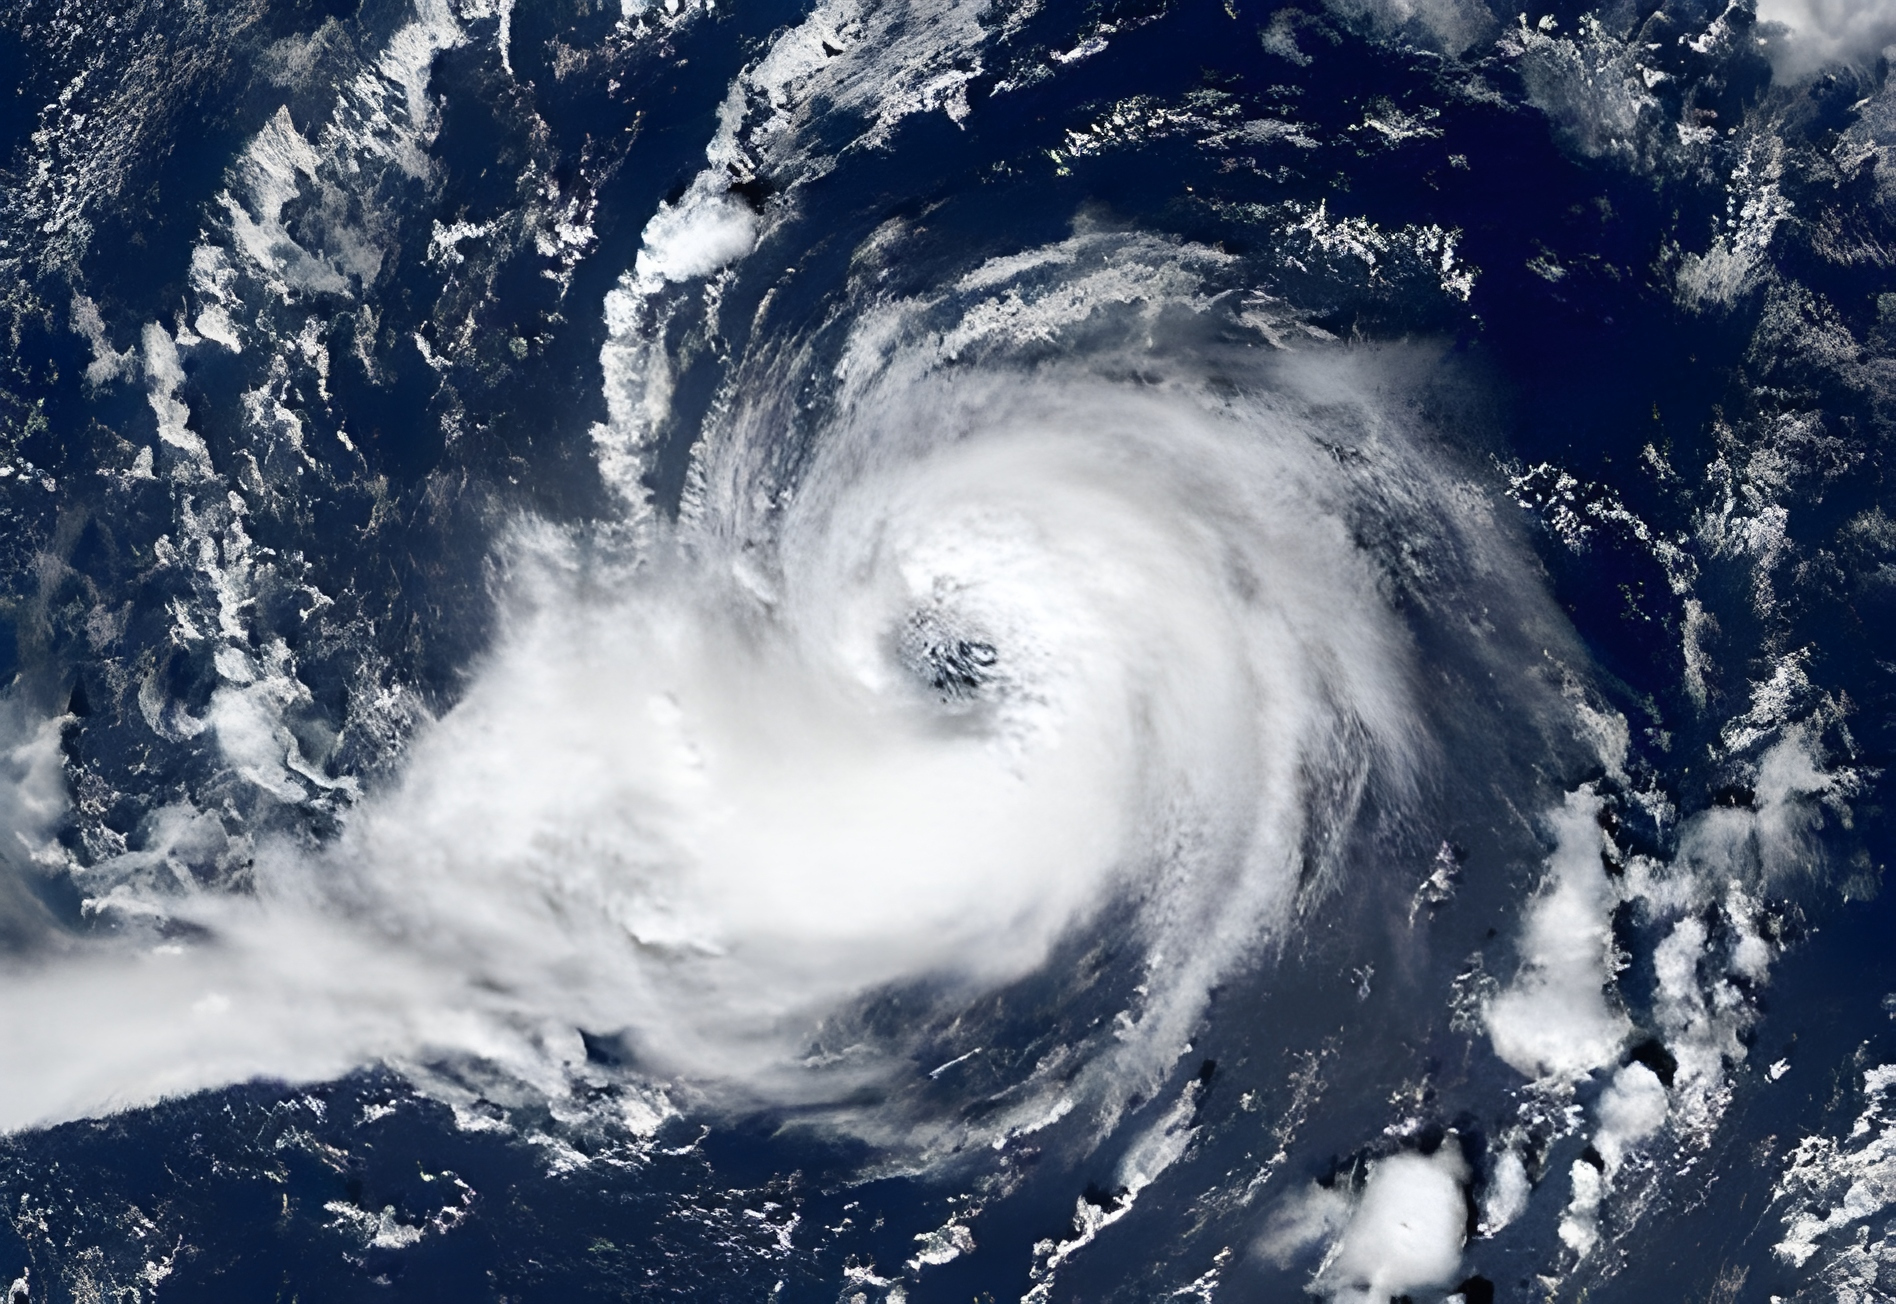 Advierten que Ian podría tocar FL con marejadas ciclónicas, inundaciones, fuertes vientos y otras condiciones climáticas